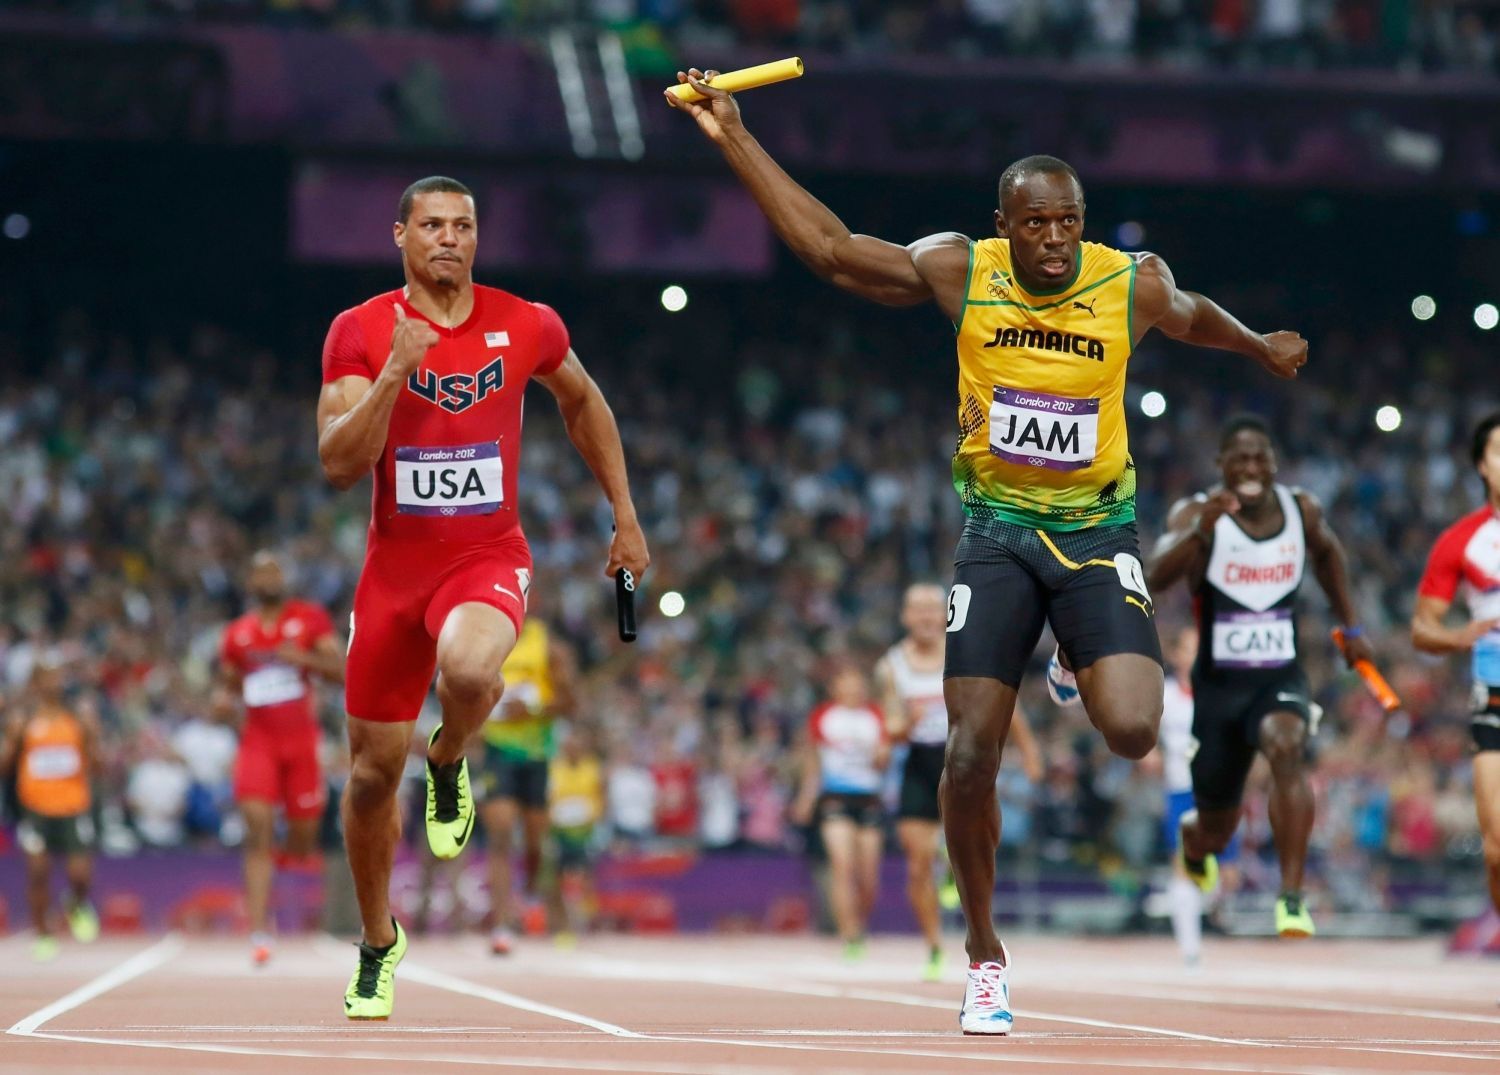 Jamajský sprinter Usain Bolt se raduje z vítězství a světového rekordu ve štafetě 4x100 metrů na OH 2012 v Londýně.